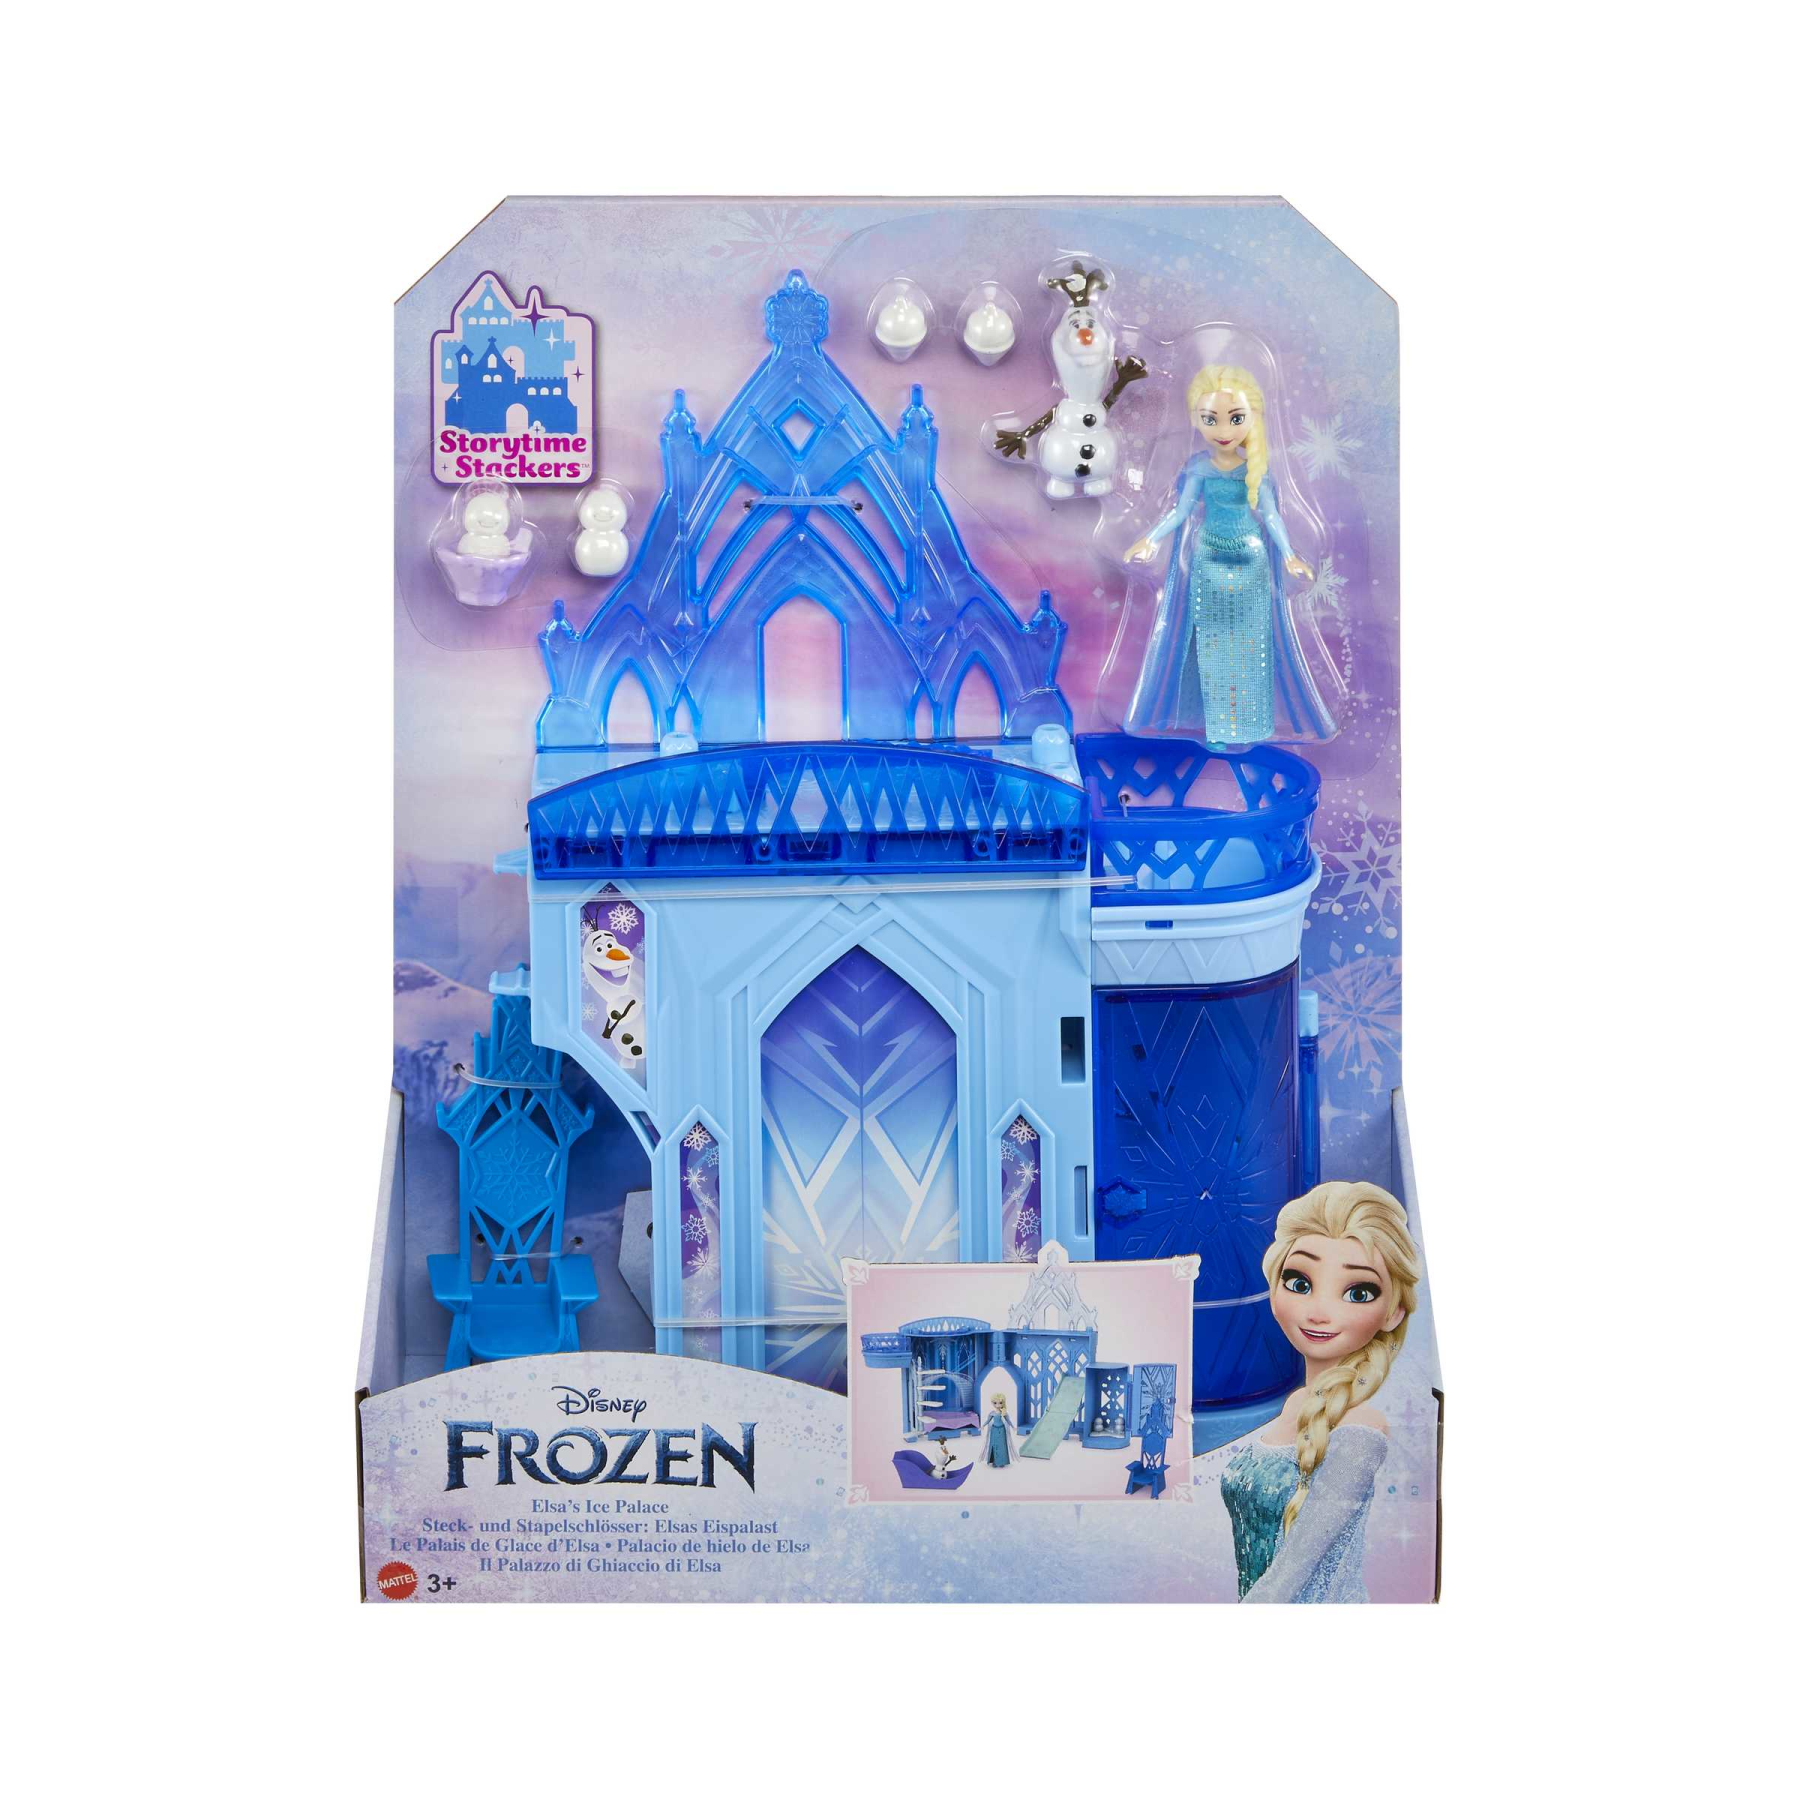 Disney frozen - set componibili palazzo di ghiaccio di elsa